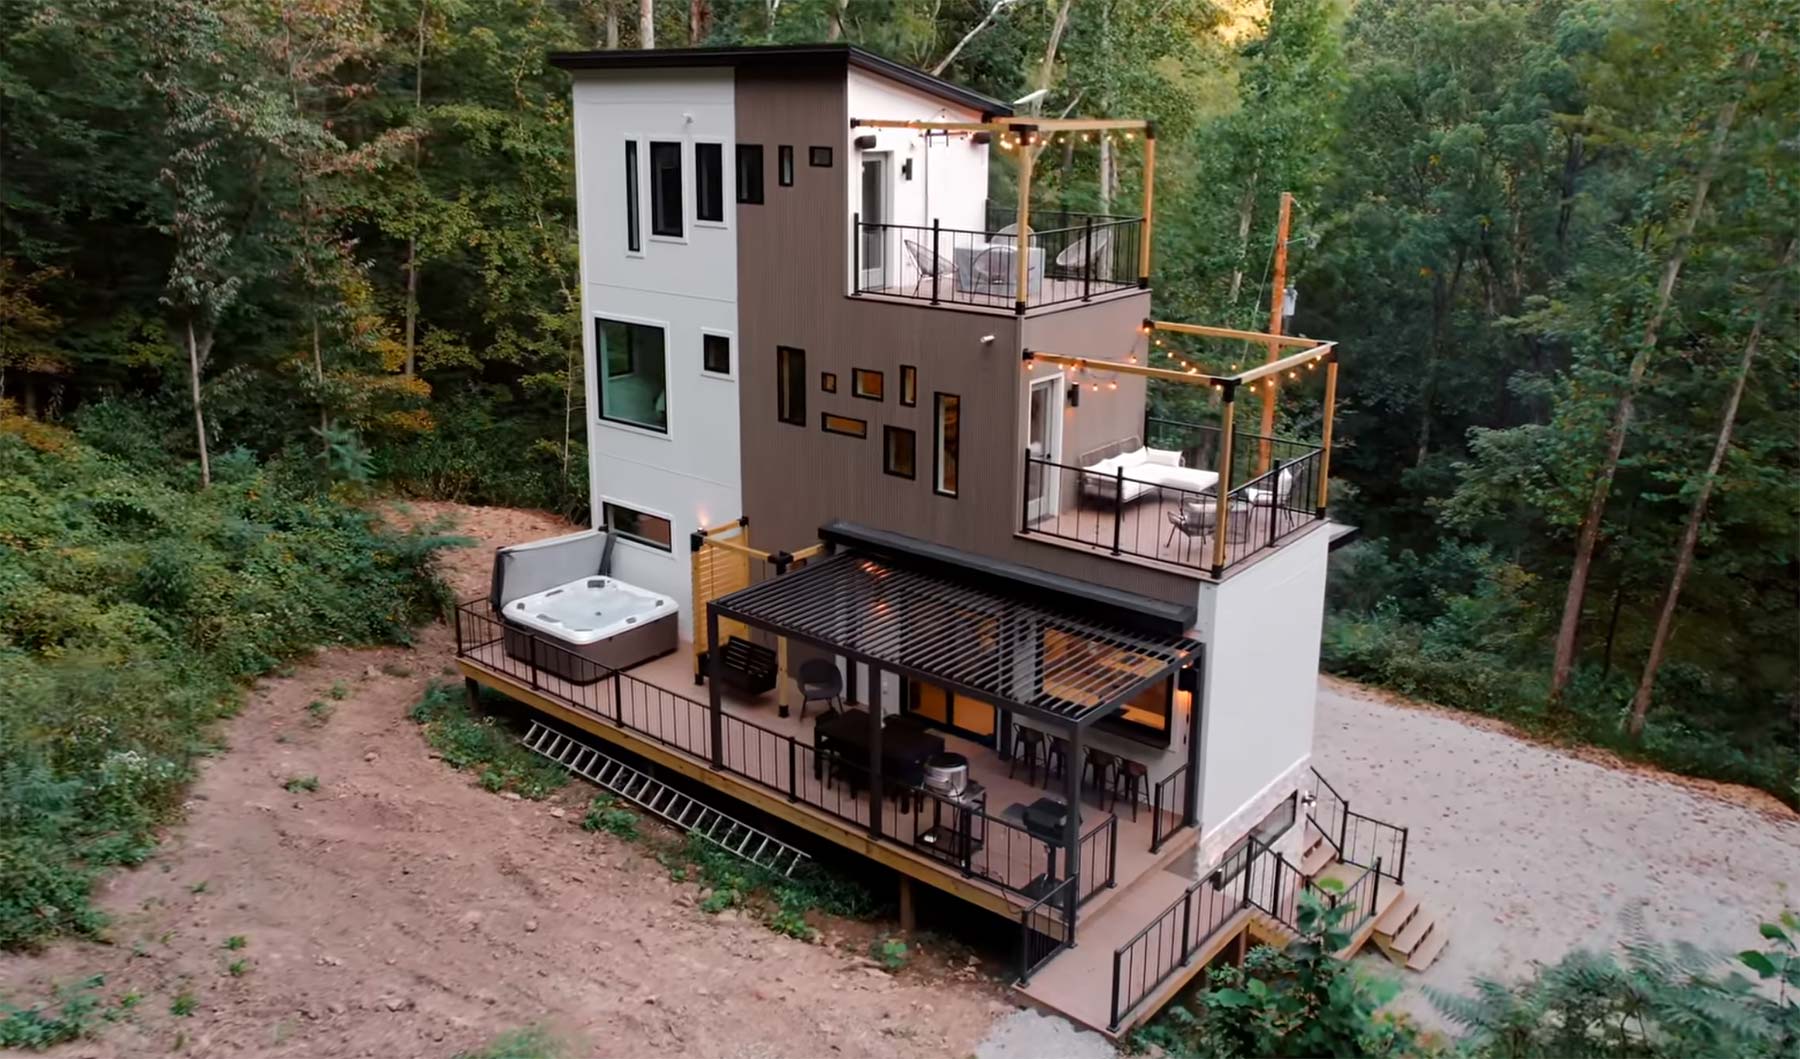 Moderne Architektur im Wald: "The Block Tower" containerhaus-im-wald 